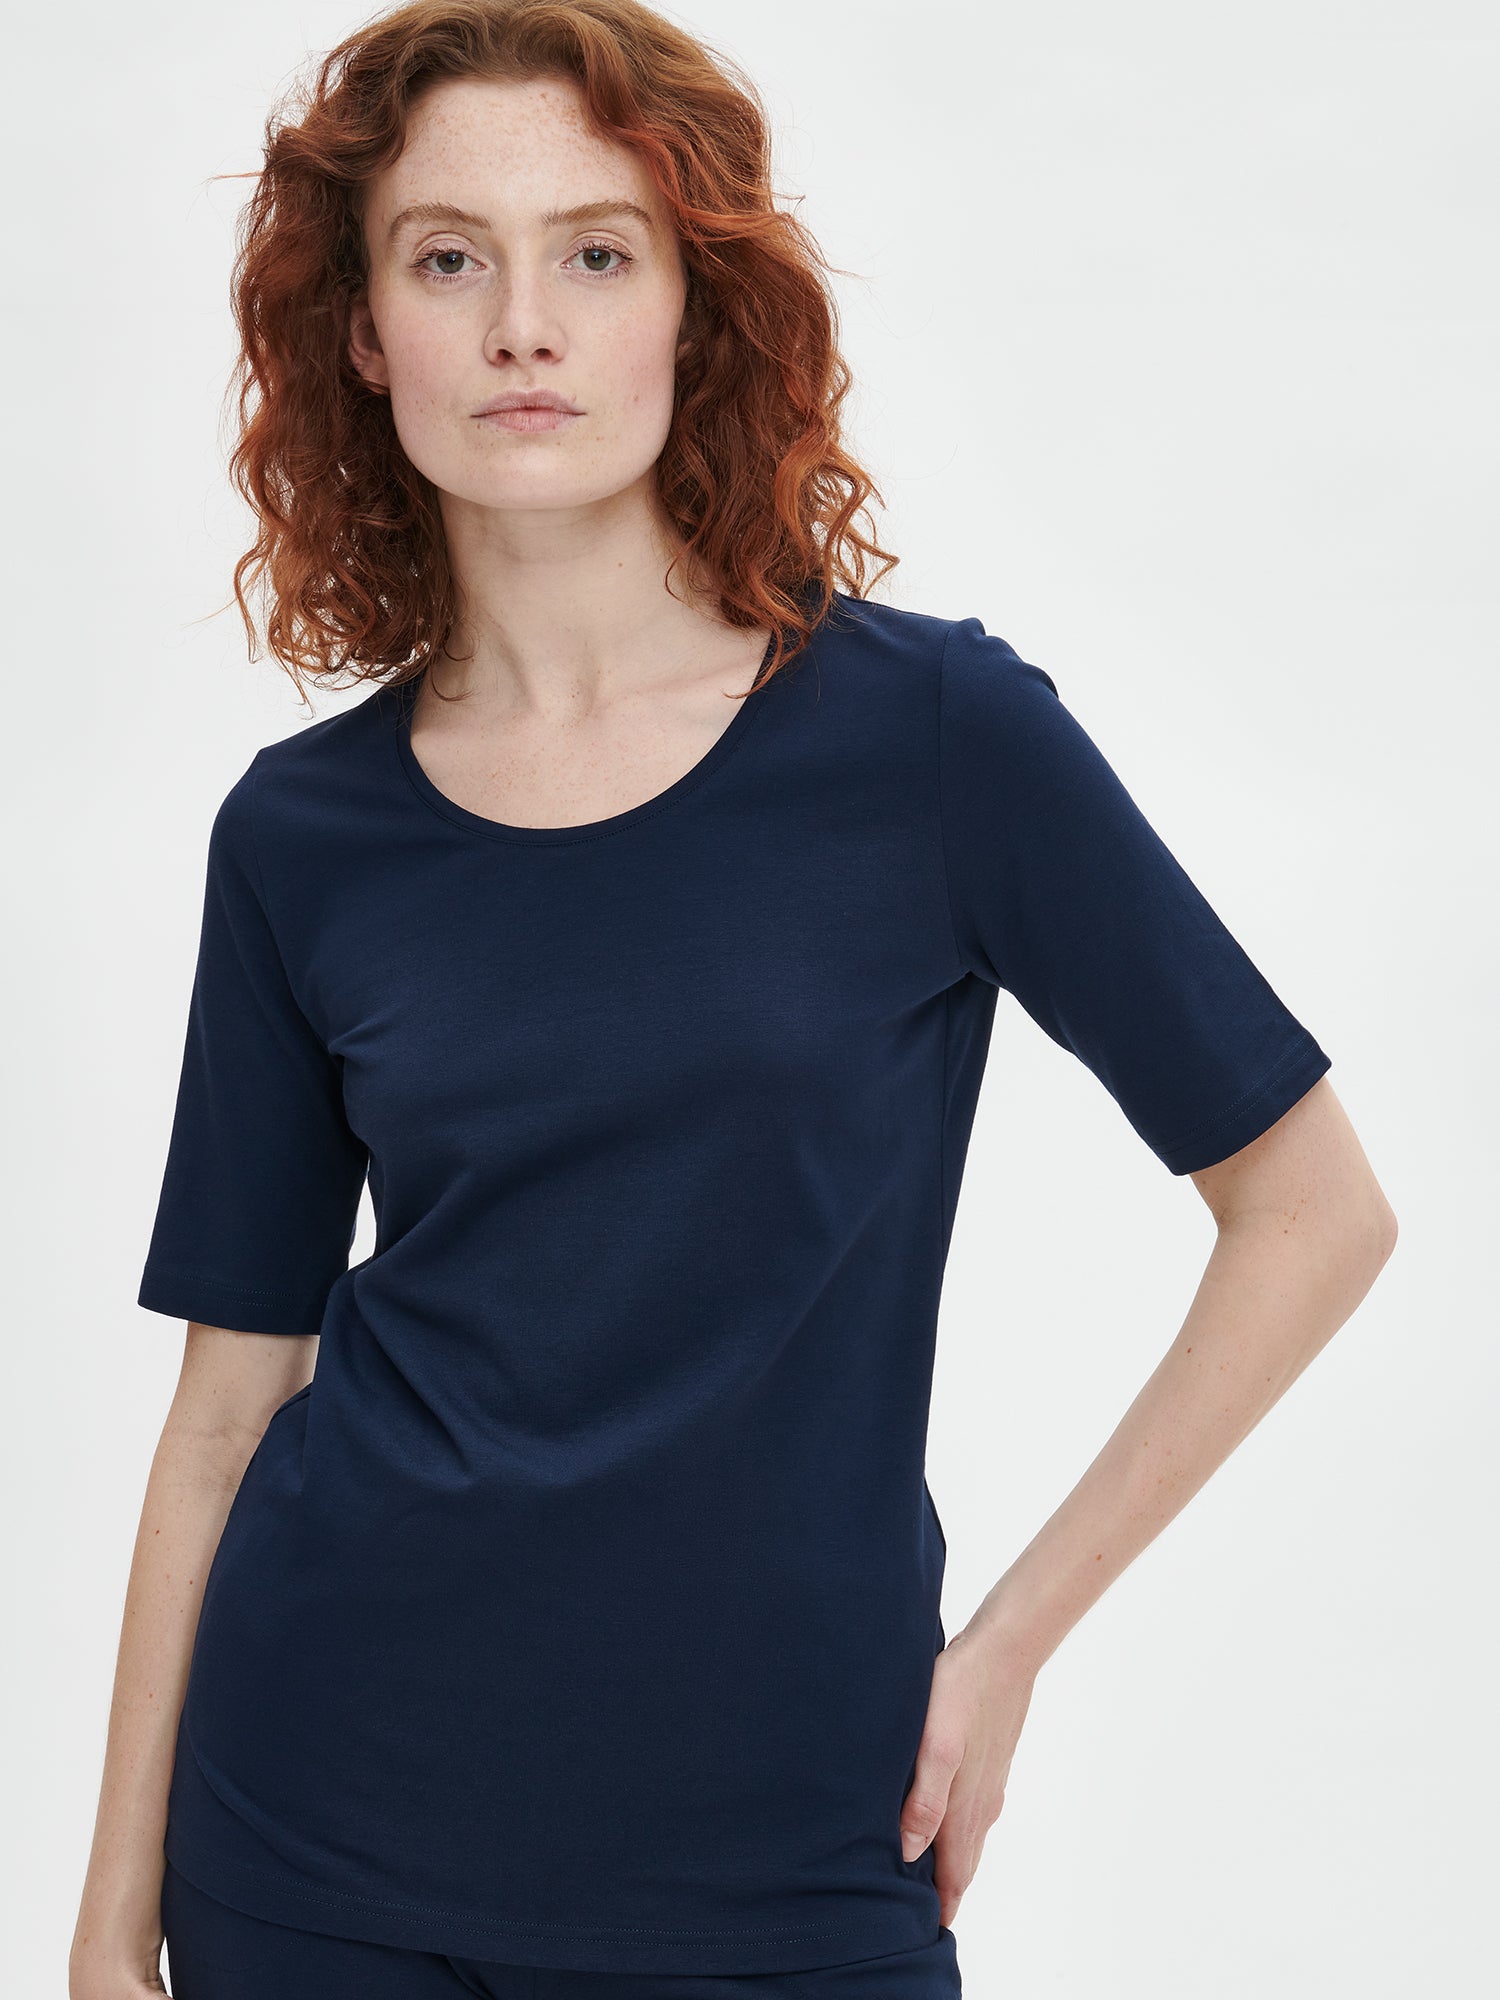 Naisten klassisen tyylikäs tummansininen Basic t-paita pyöreällä pääntiellä edestä. 